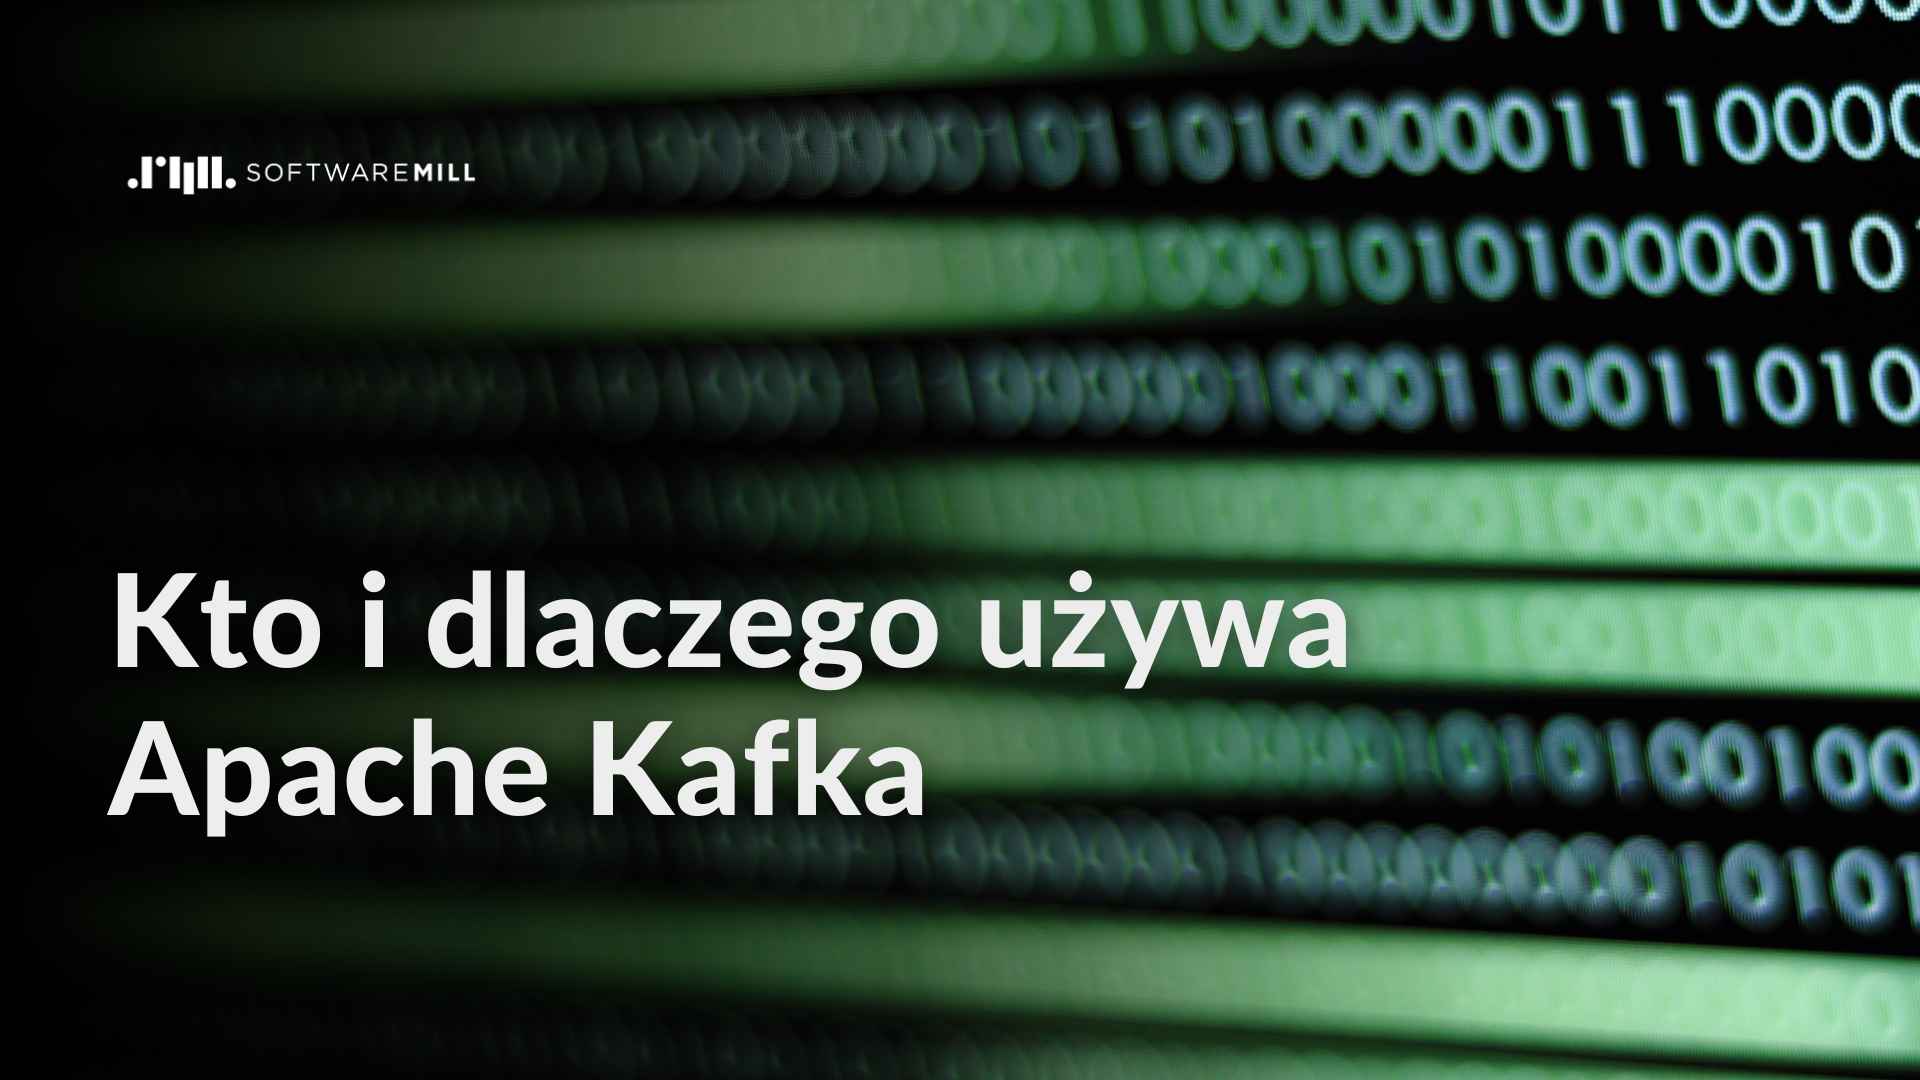 Kto i dlaczego używa Apache Kafka webp image